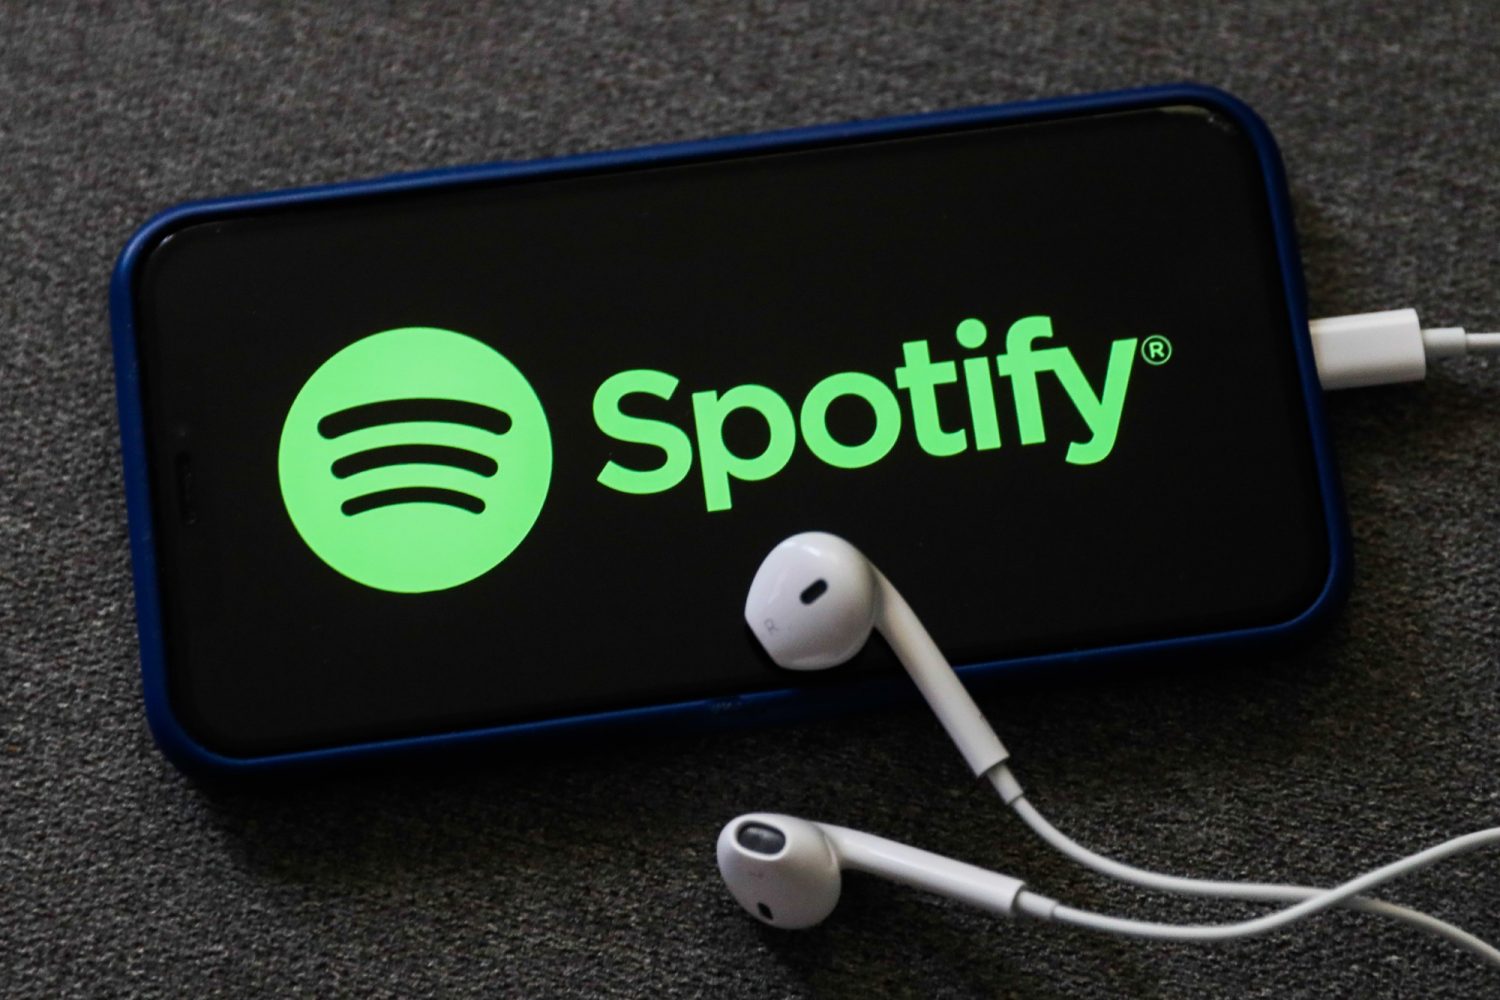 Spotify Brasil expande formas de pagamento com PIX — Spotify